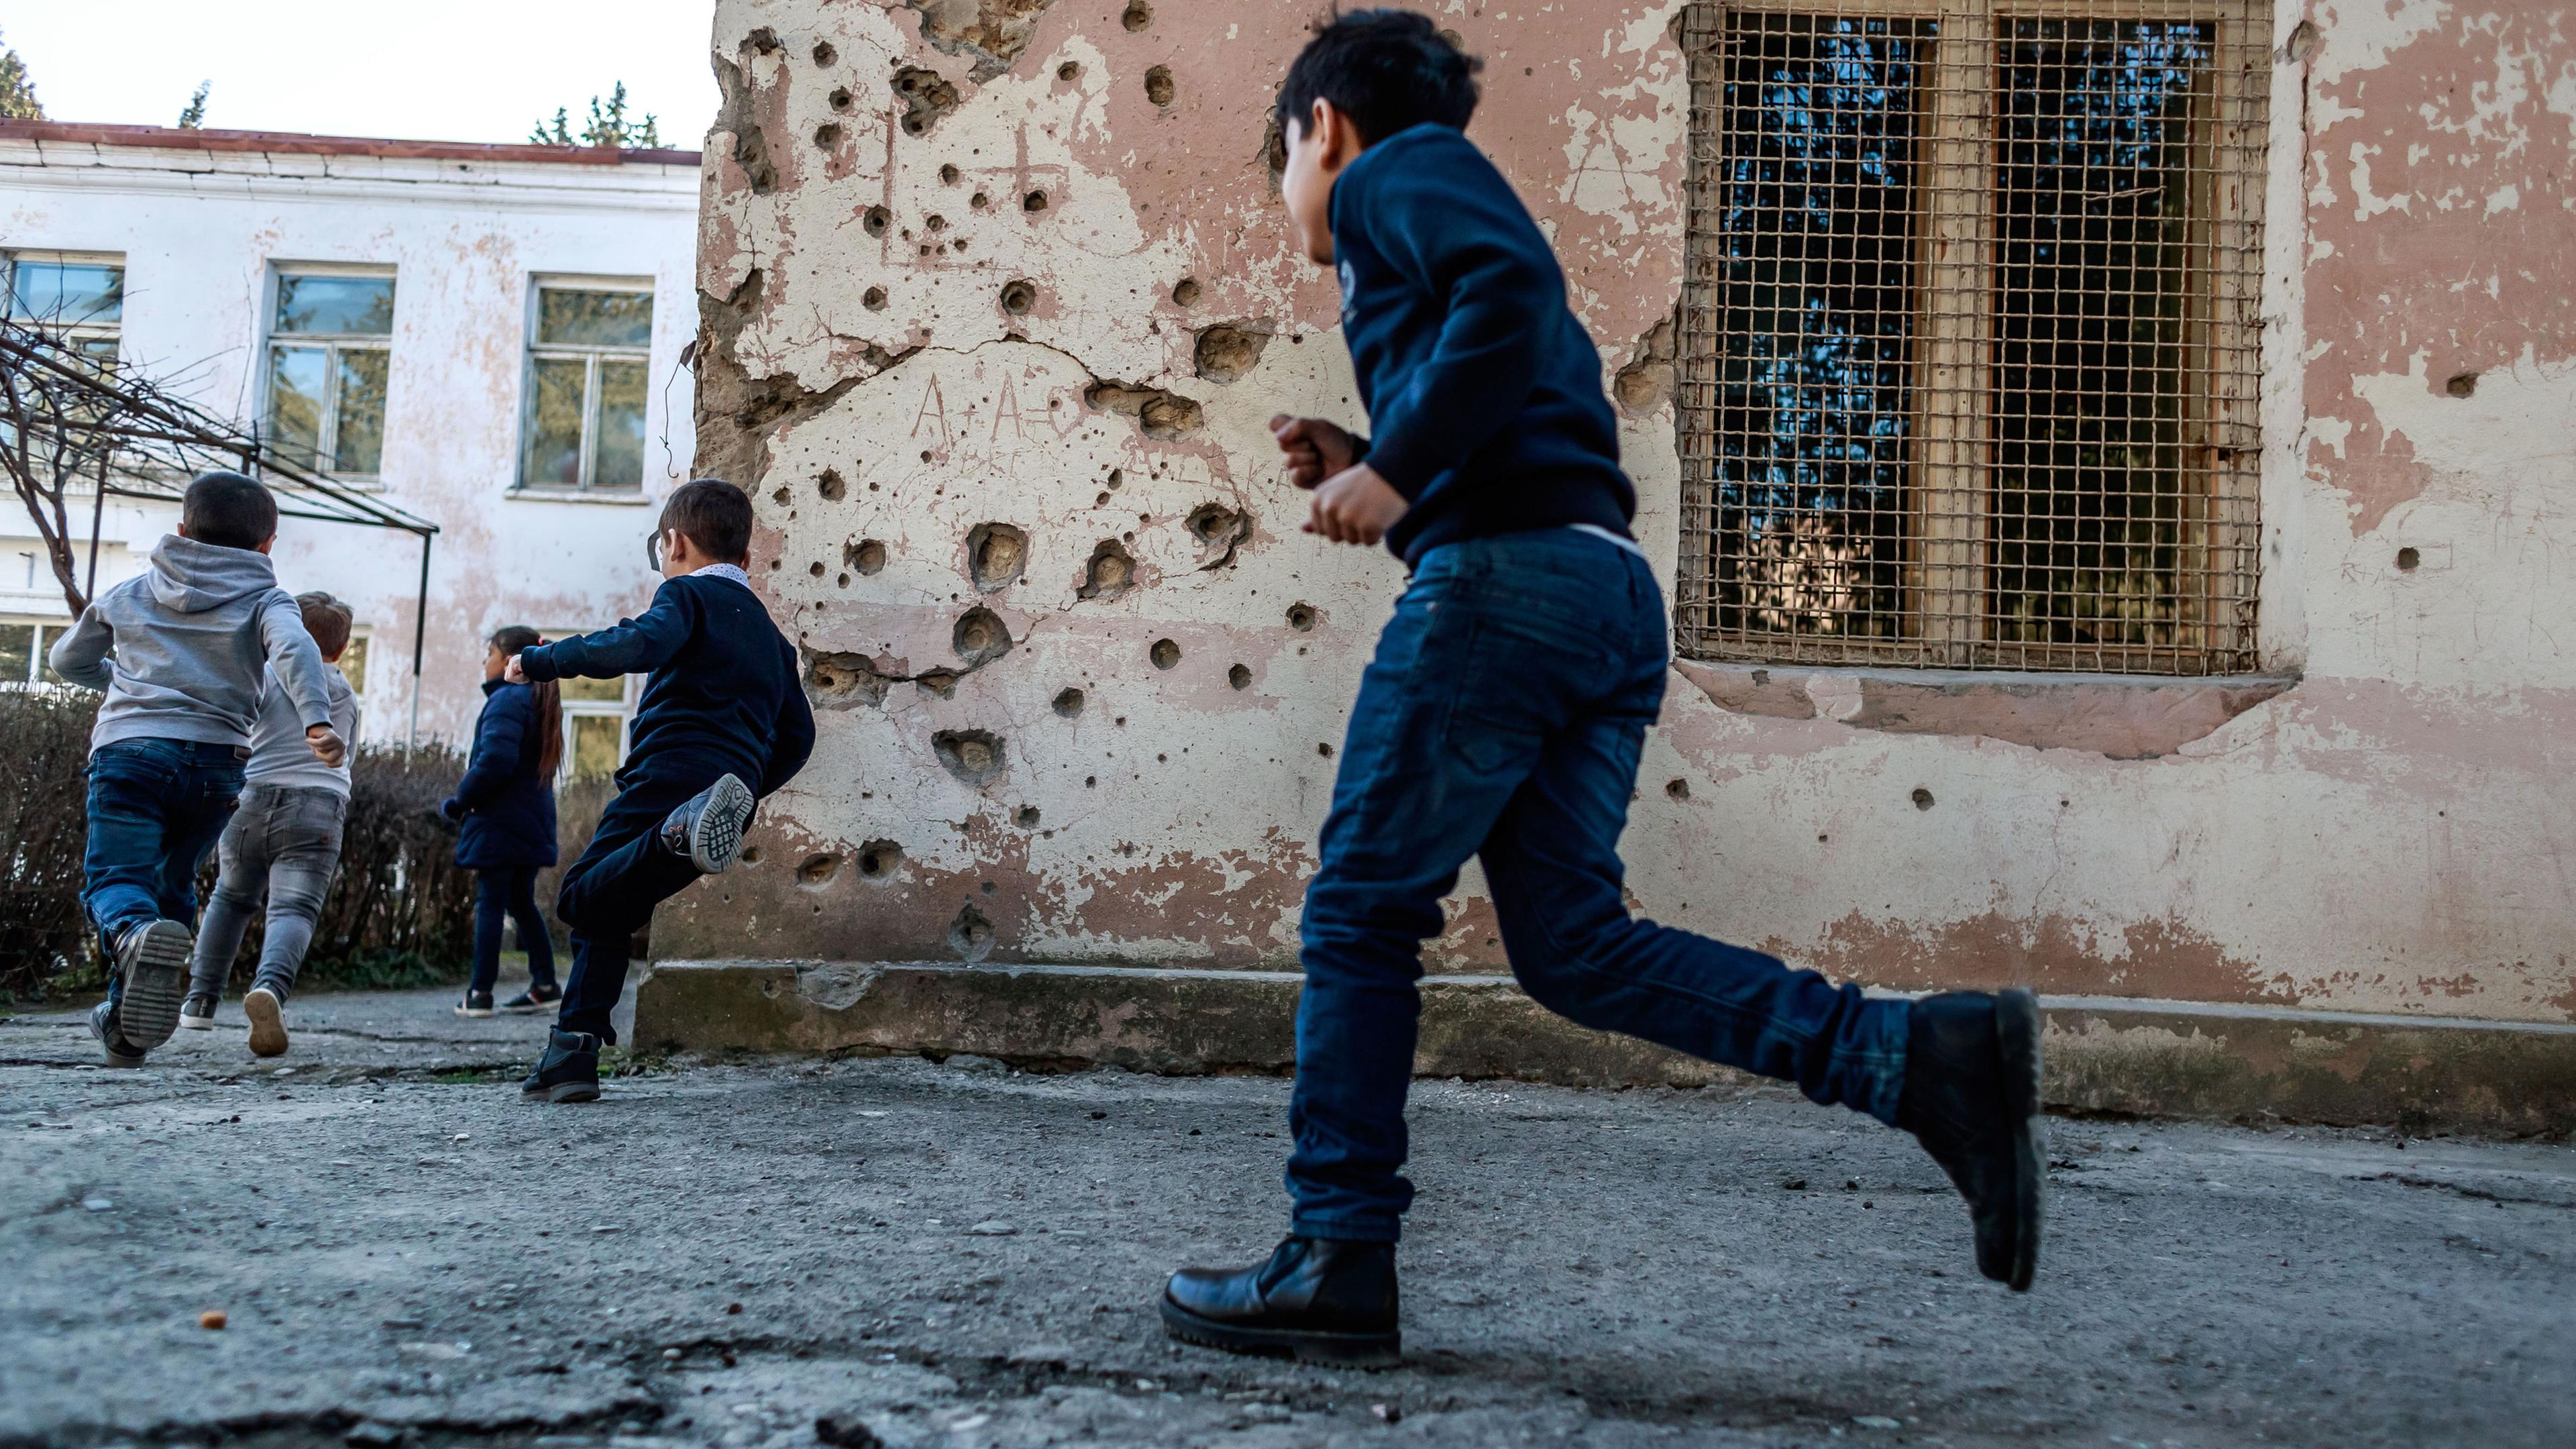 Kinder spielem in nach gewaltsamen Auseinandersetzungen zerstörtem Schulhof in Bergkarabach